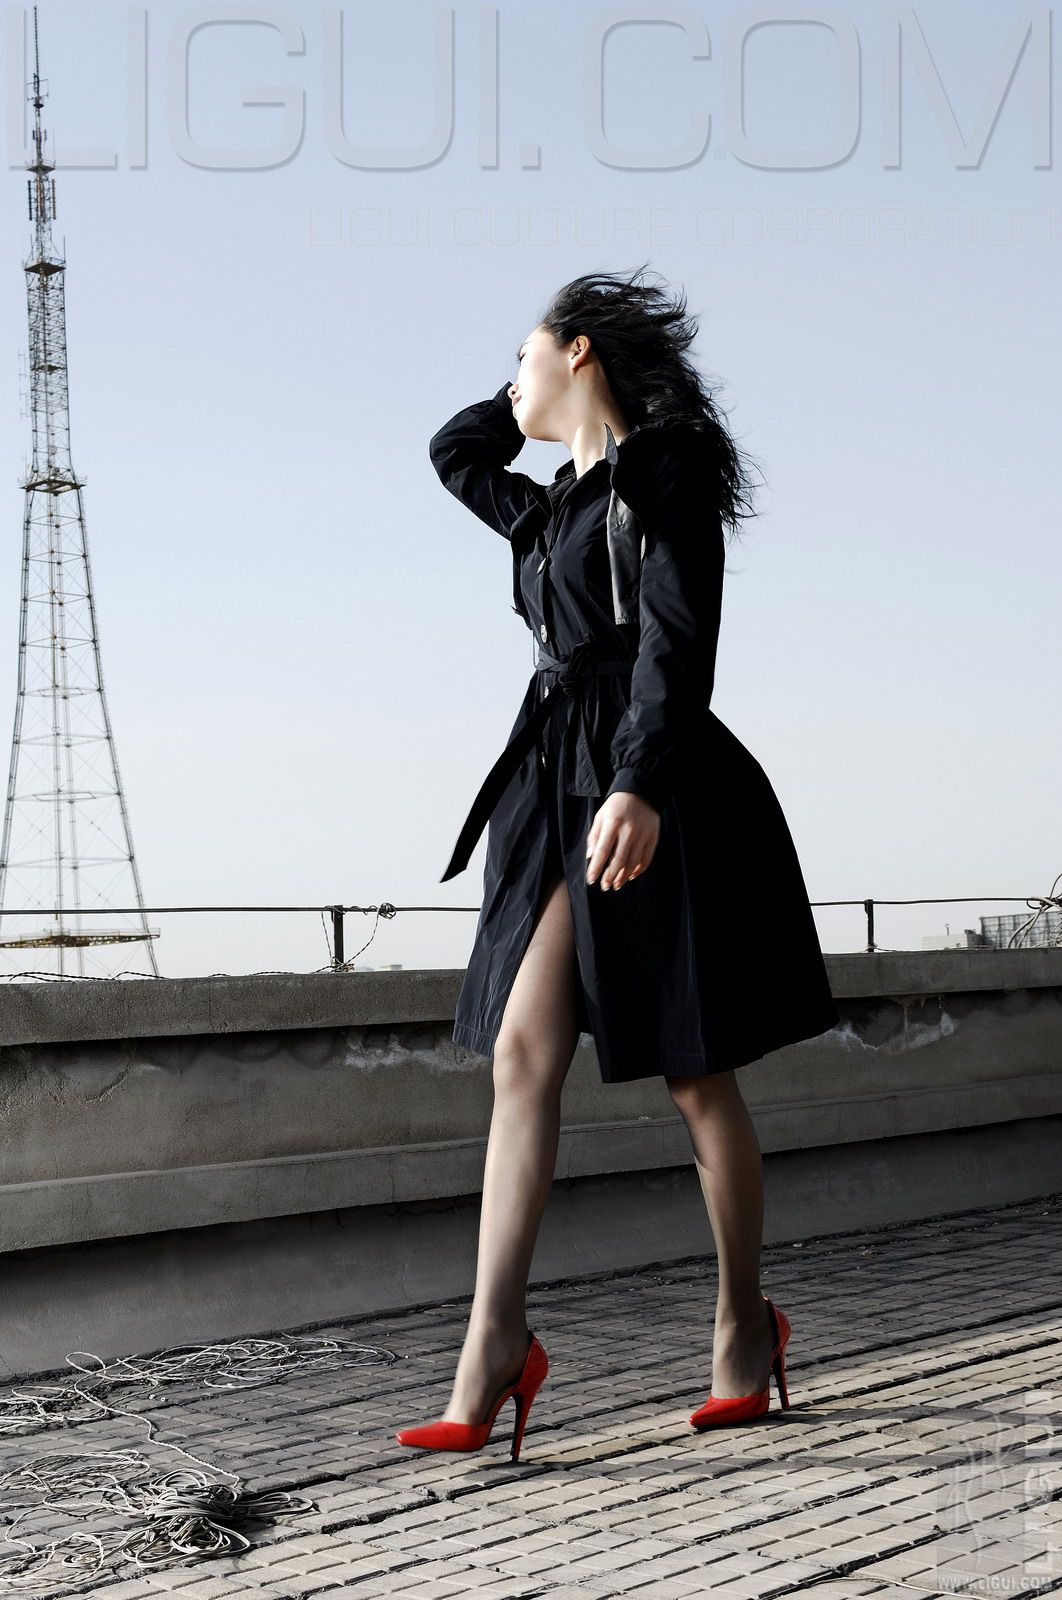 [丽柜LiGui] Model Cheng Hailun “Red and Black” Silk Foot Photo Picture